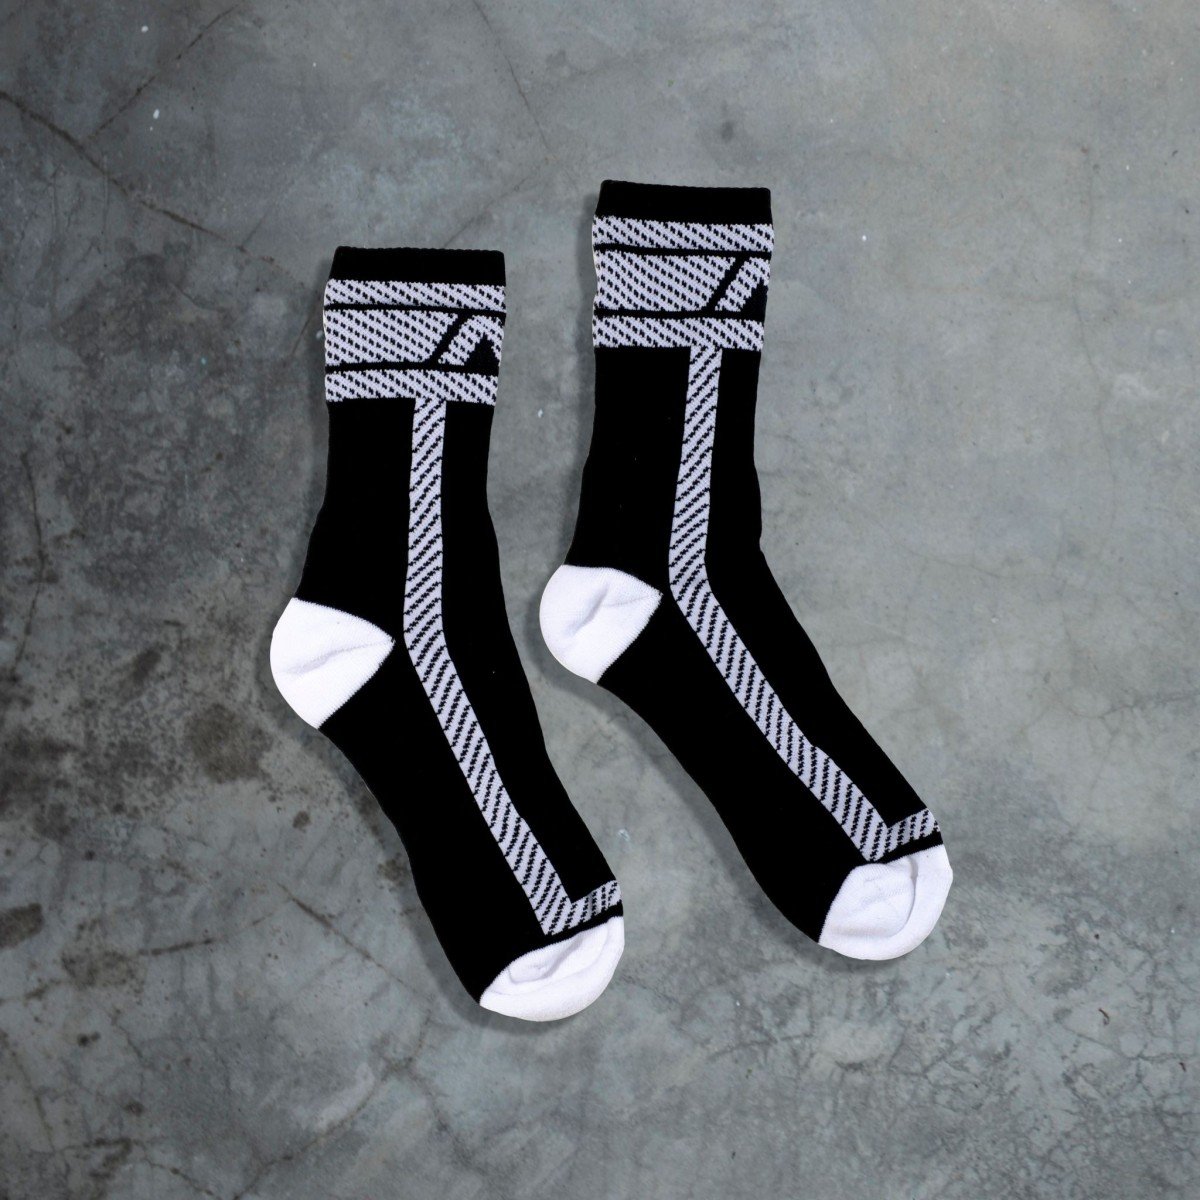 Ponožky AD Fetish ADF28 Fetish Sock černo-bílé S/M, bavlněné ponožky